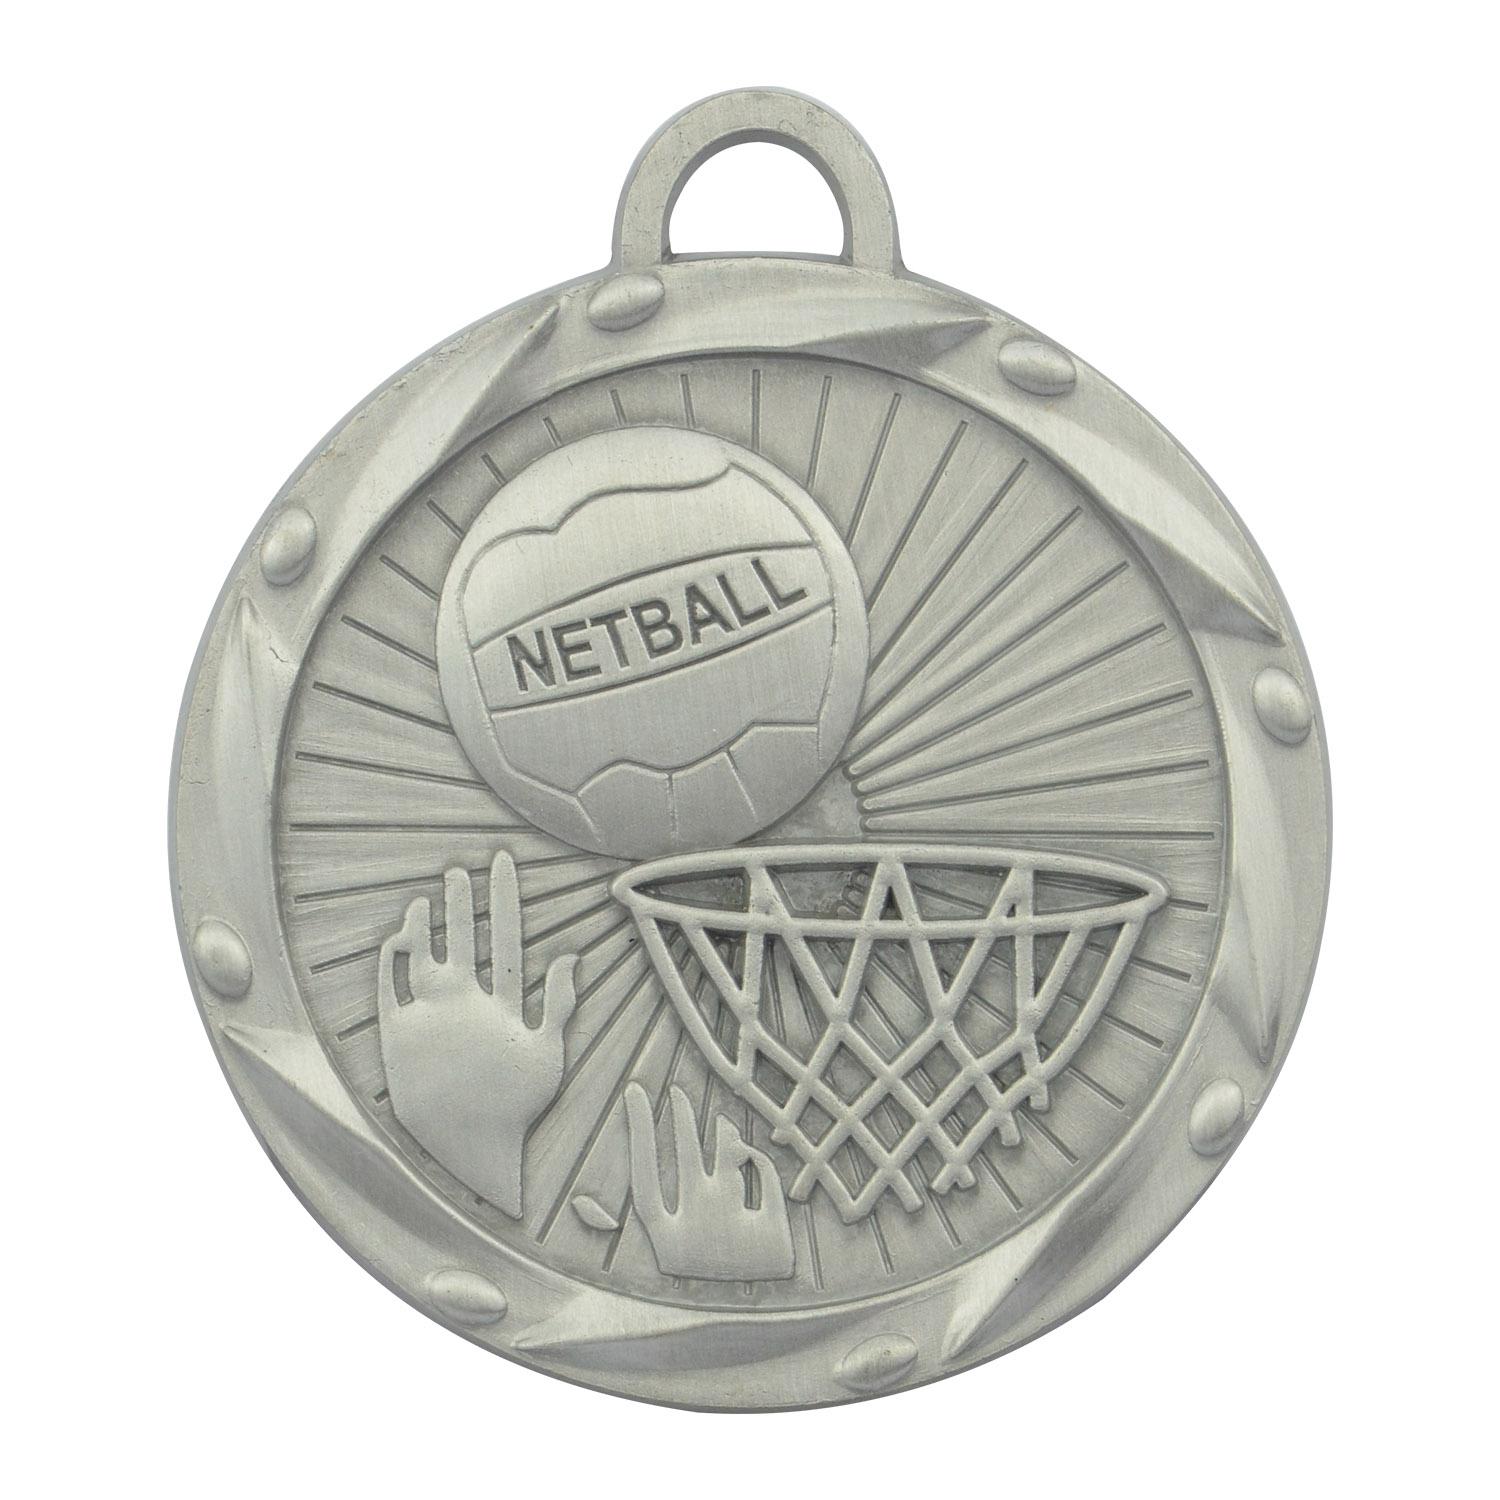 مصنع تصنيع تذكاري ذهبي فضي نحاسي معدن كرة قدم كرة طائرة كرة سلة ميدالية رياضية مخصصة (1)